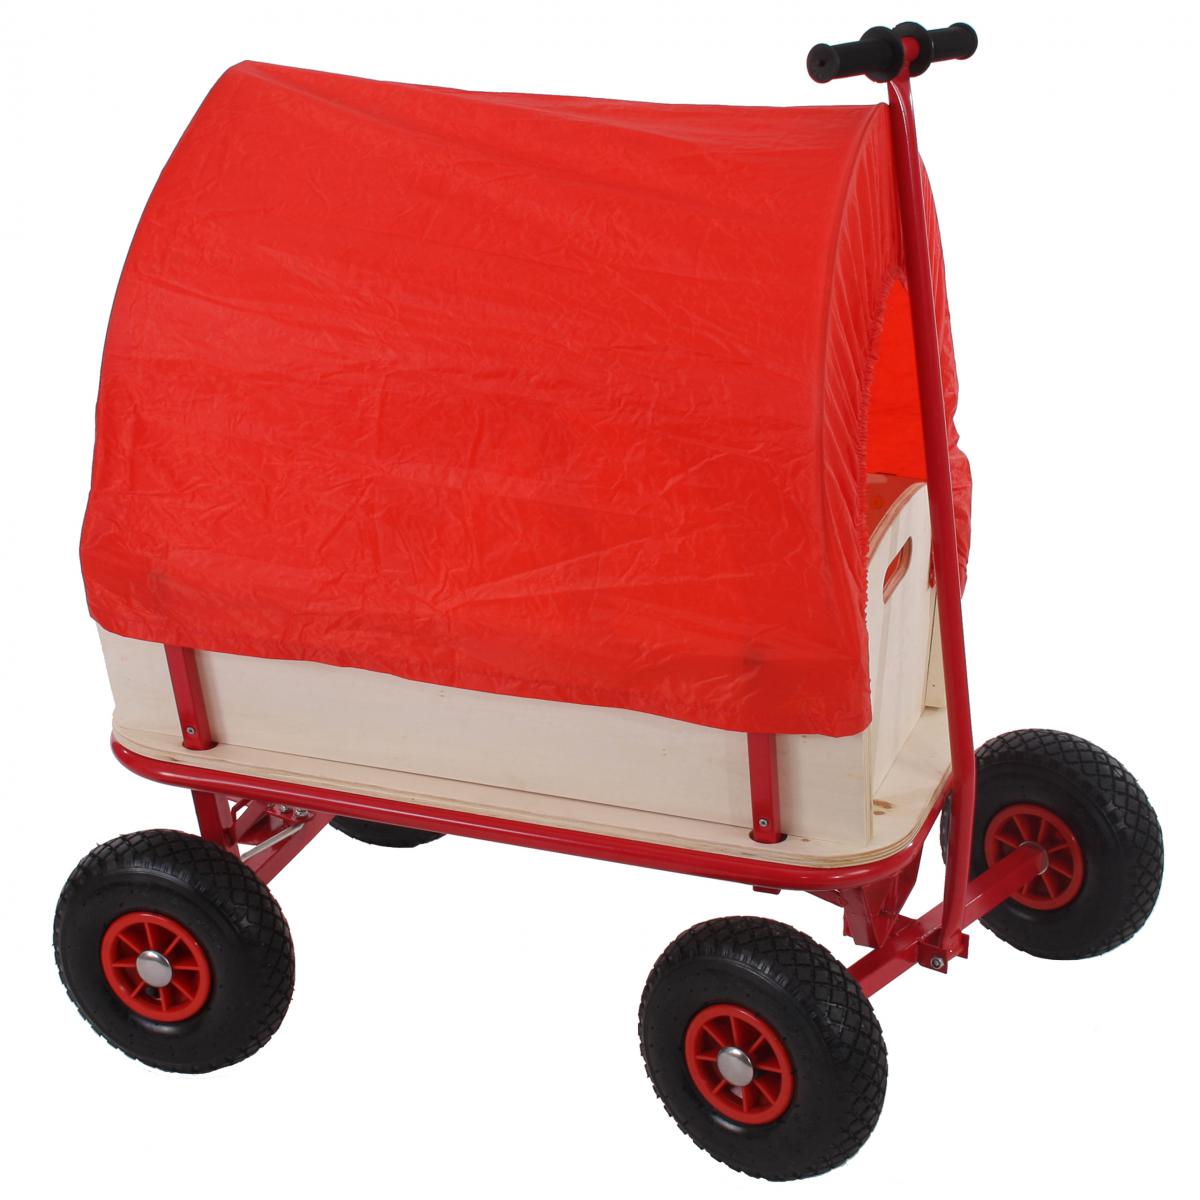 Mendler - Voiturette charrette à bras chariot, bois, 89x61cm, bâche rouge - Véhicule à pédales